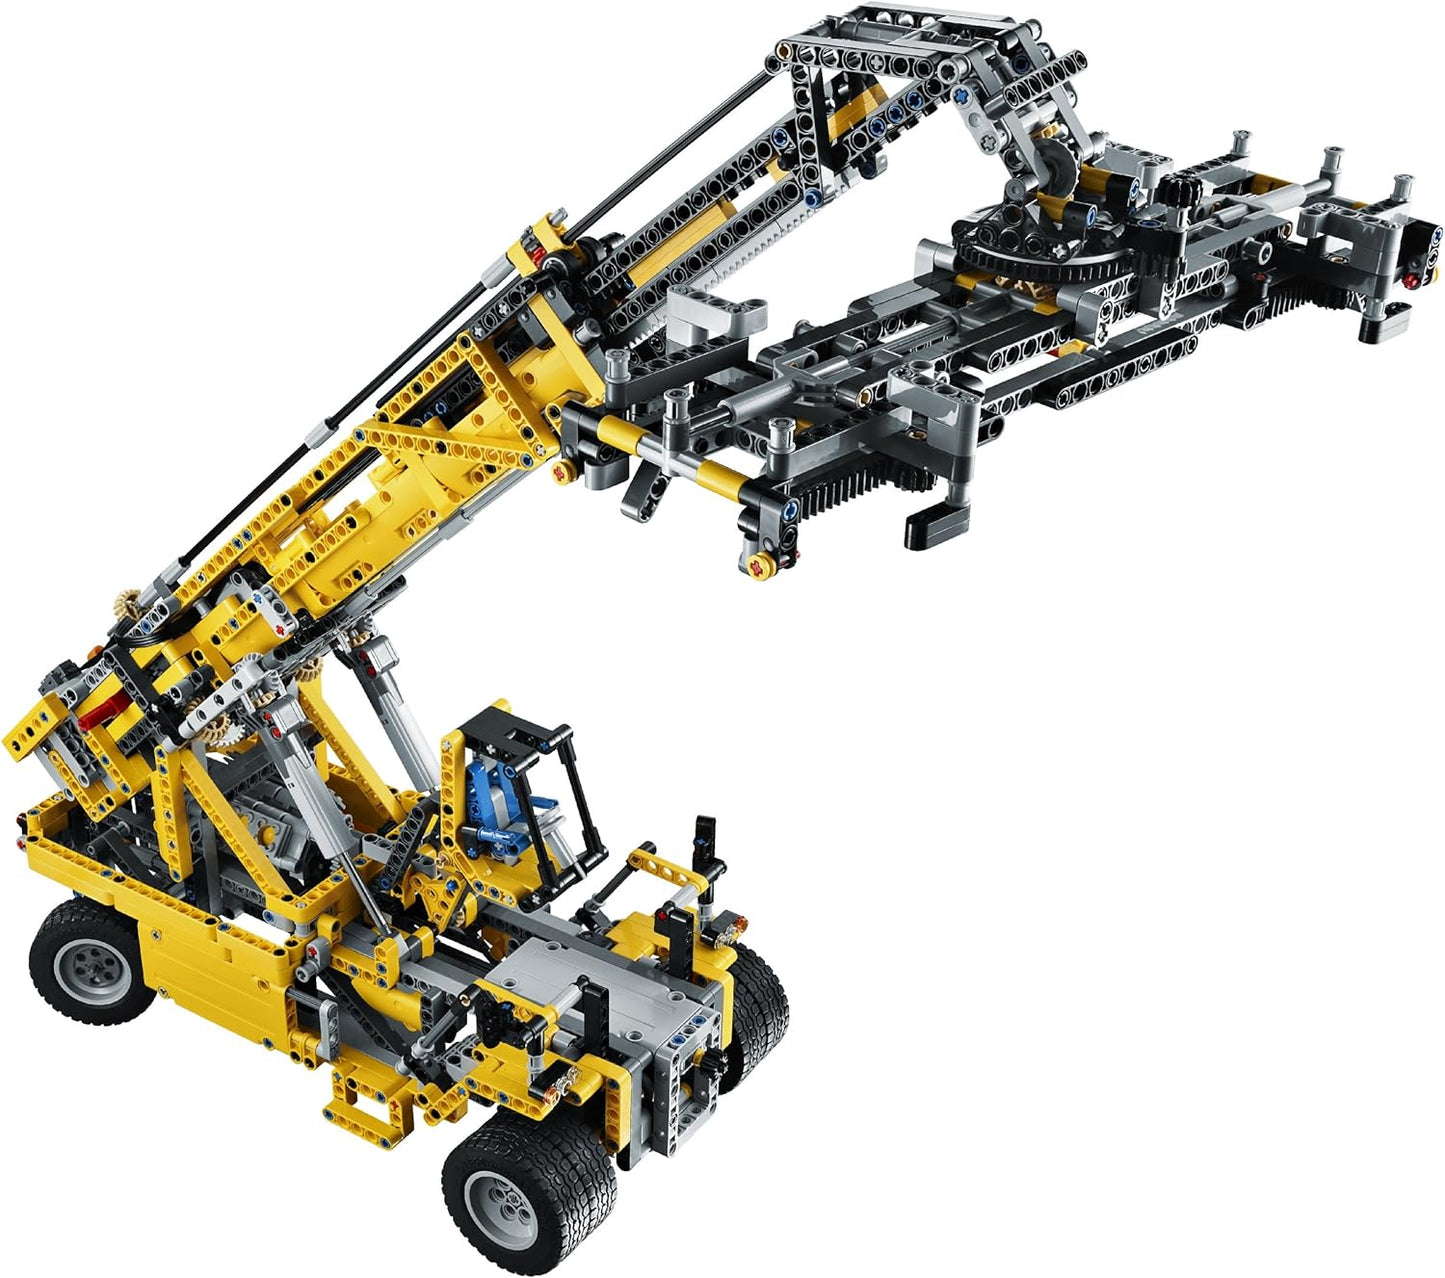 LEGO TECHNIC 42009 Mobile Crane MK II